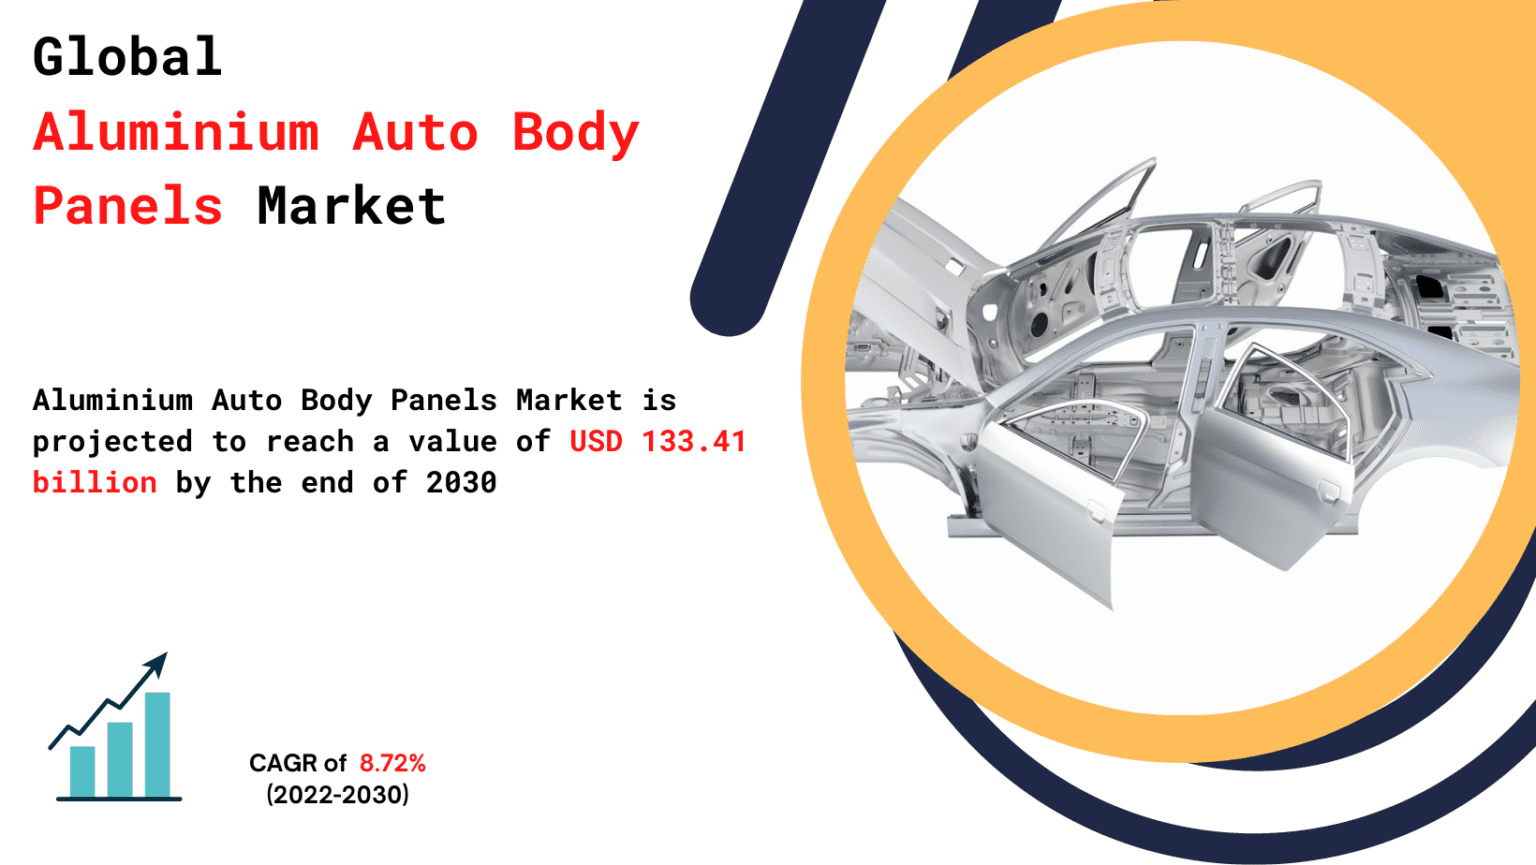 Aluminium-Auto-Body-Panels-Market-1536x865_(1)